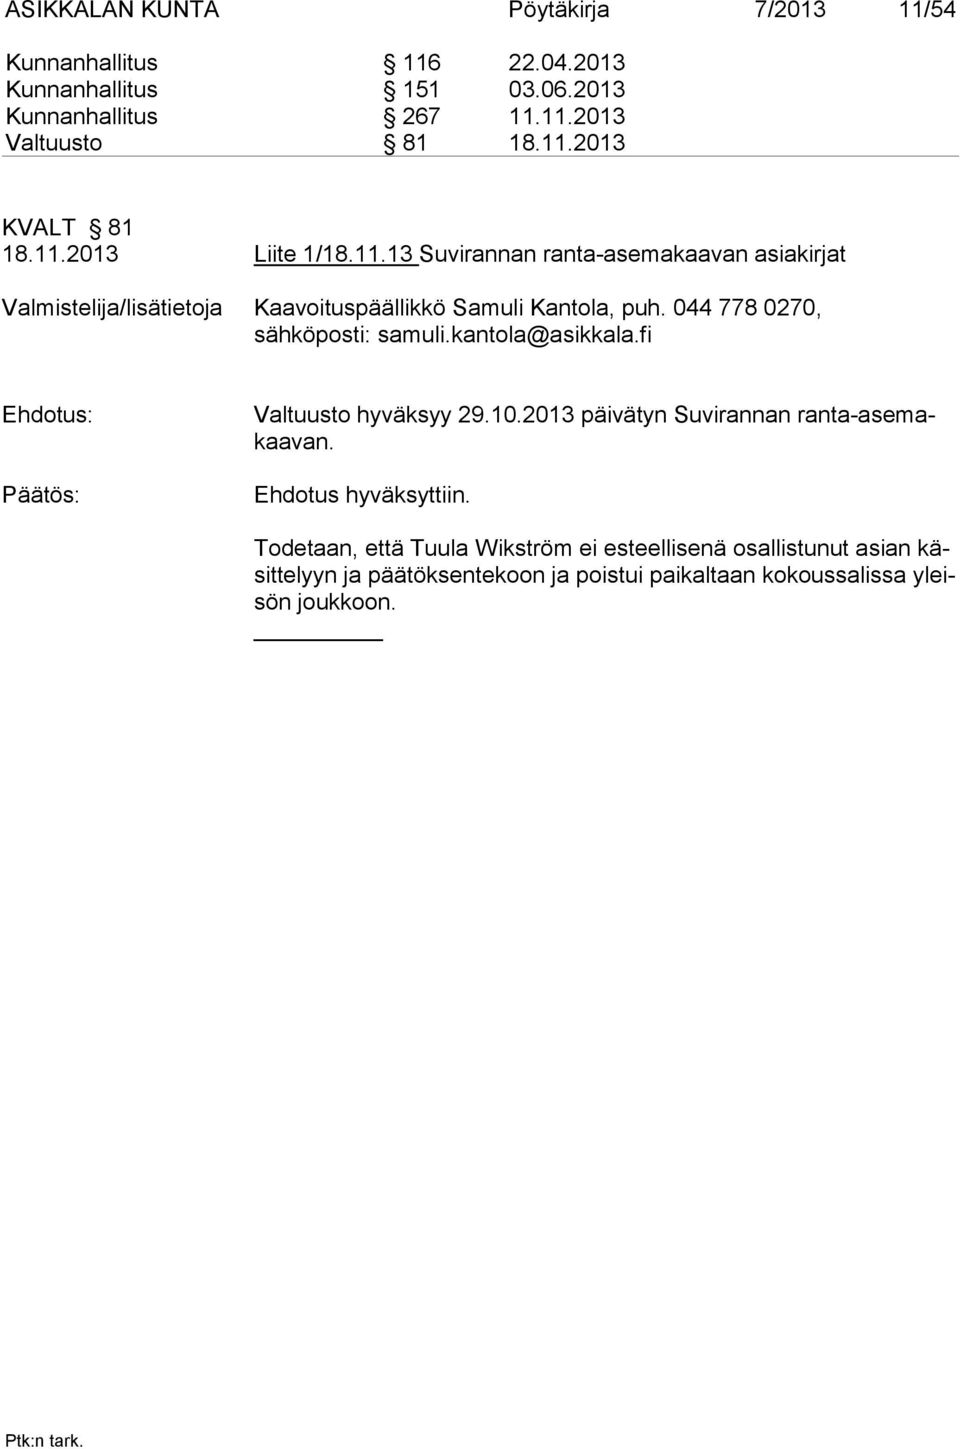 044 778 0270, sähköposti: samuli.kantola@asikkala.fi Ehdotus: Valtuusto hyväksyy 29.10.2013 päi vä tyn Suvirannan ranta-asemakaavan.